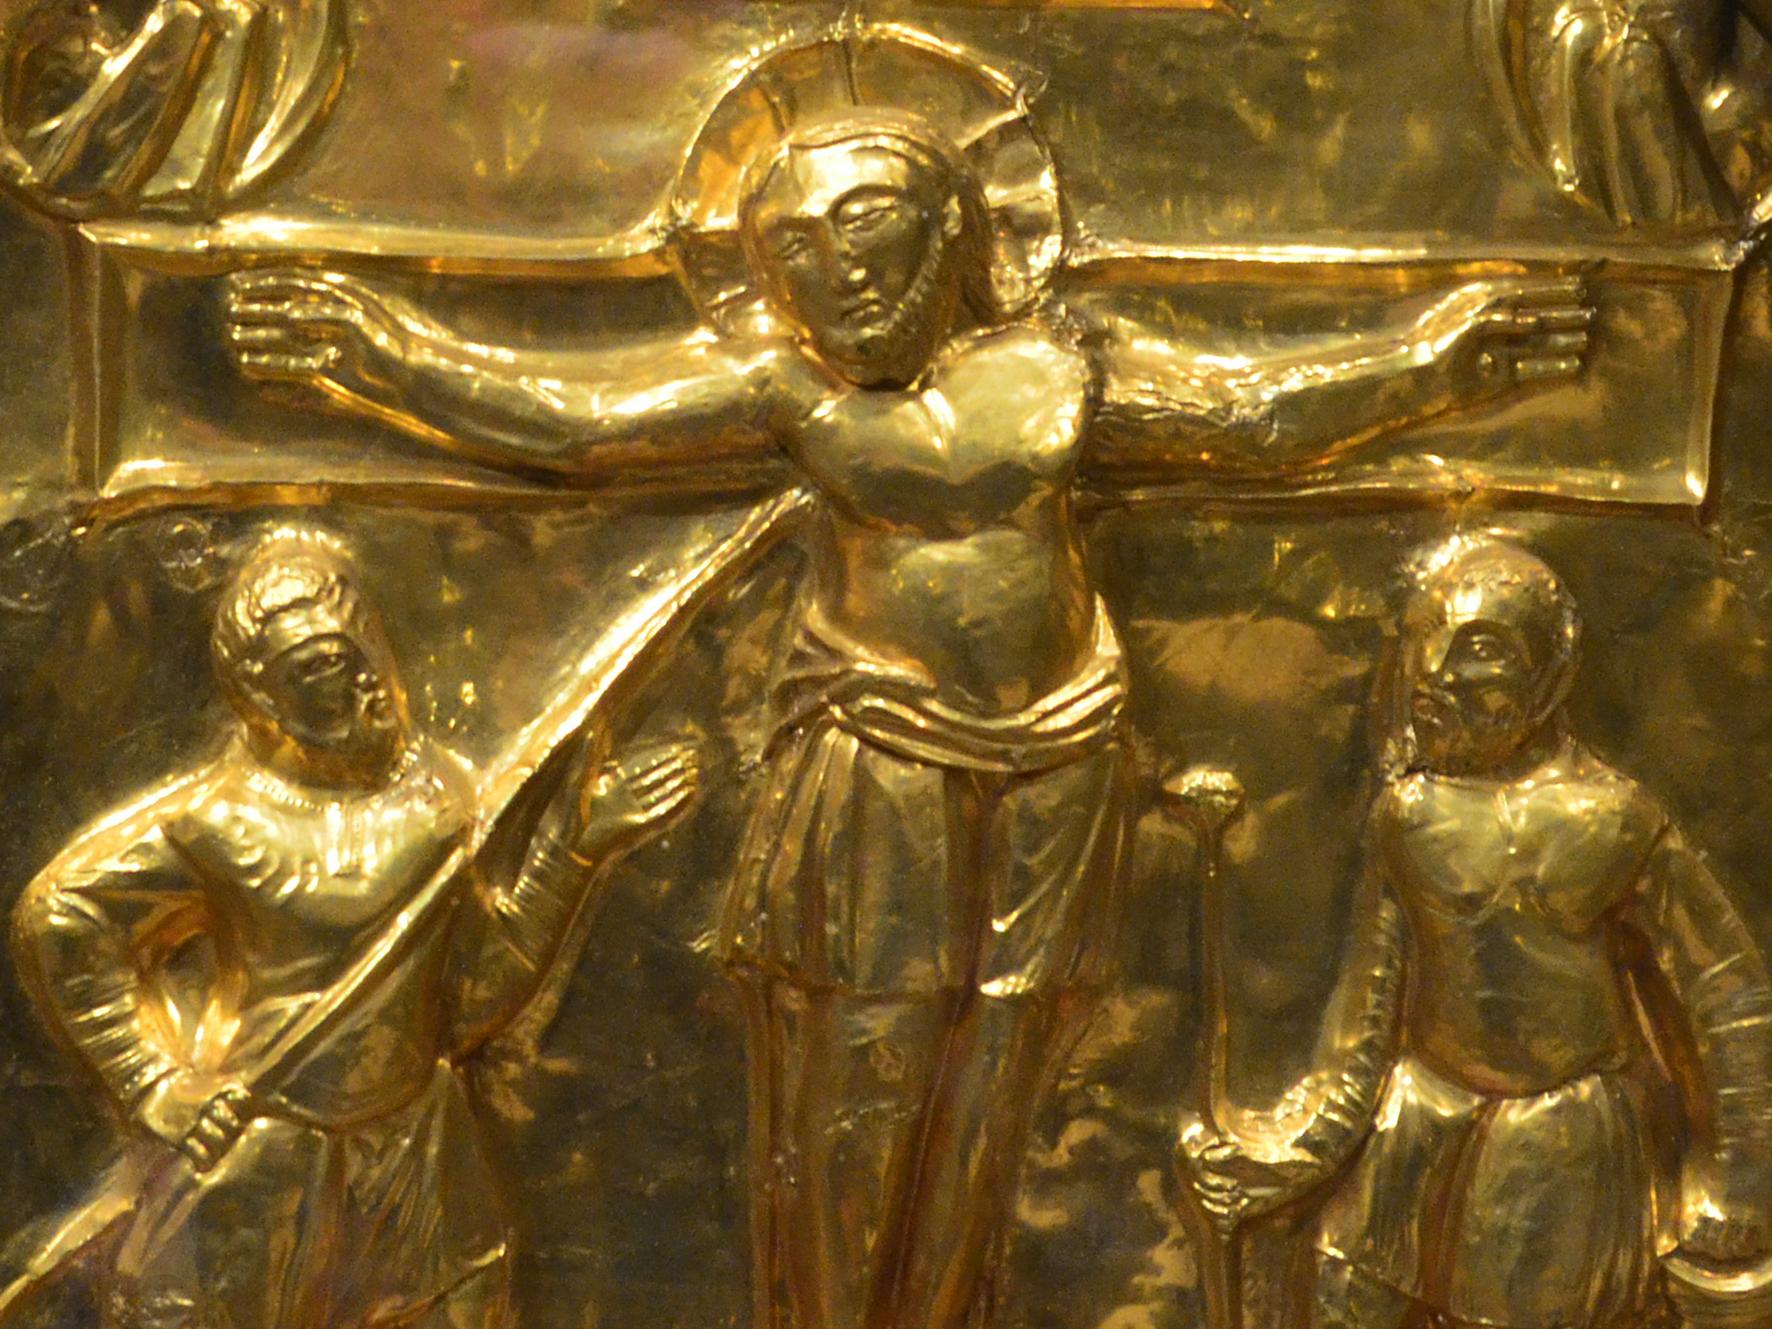 Kreuzigung, Detail aus der Pala d'oro im Aachener Dom (c) Domkapitel Aachen/Andreas Steindl